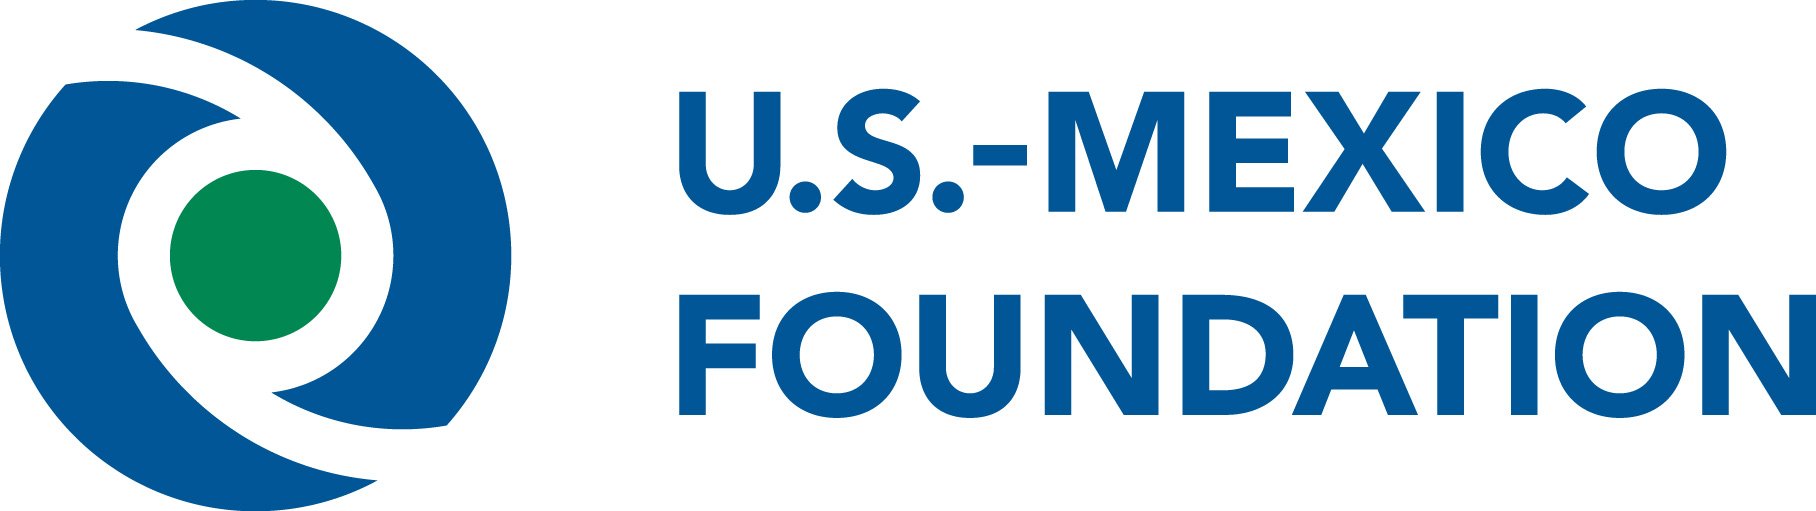 us mexico foundation logo.jpeg